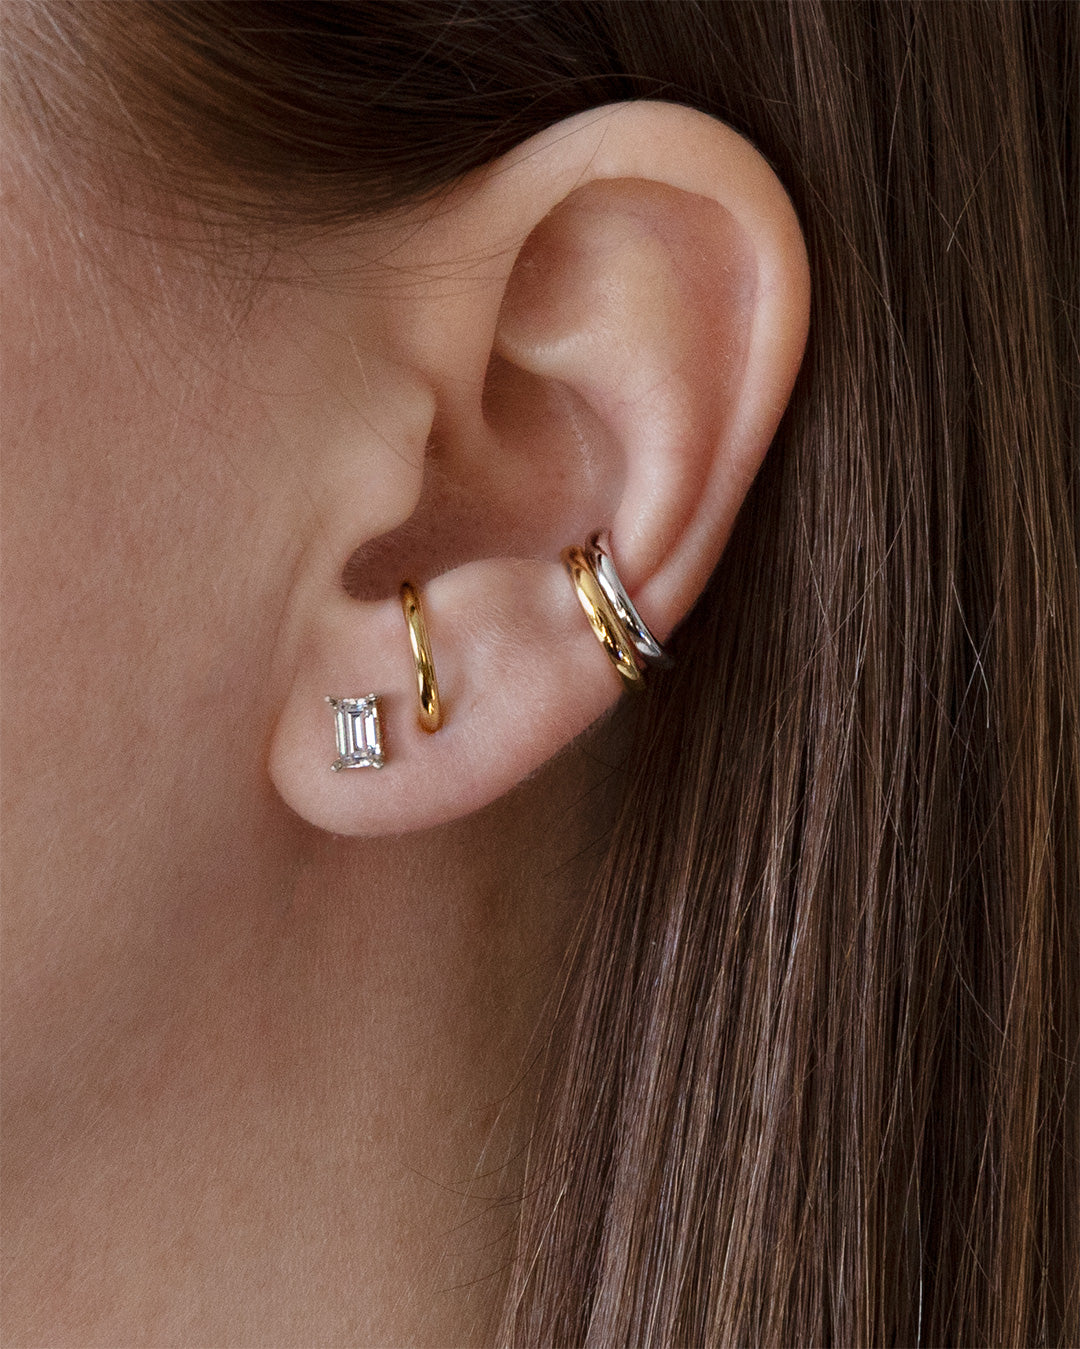 Ear Cuffs - Gold Earring Cuffs, Chain Cuffs & Bars